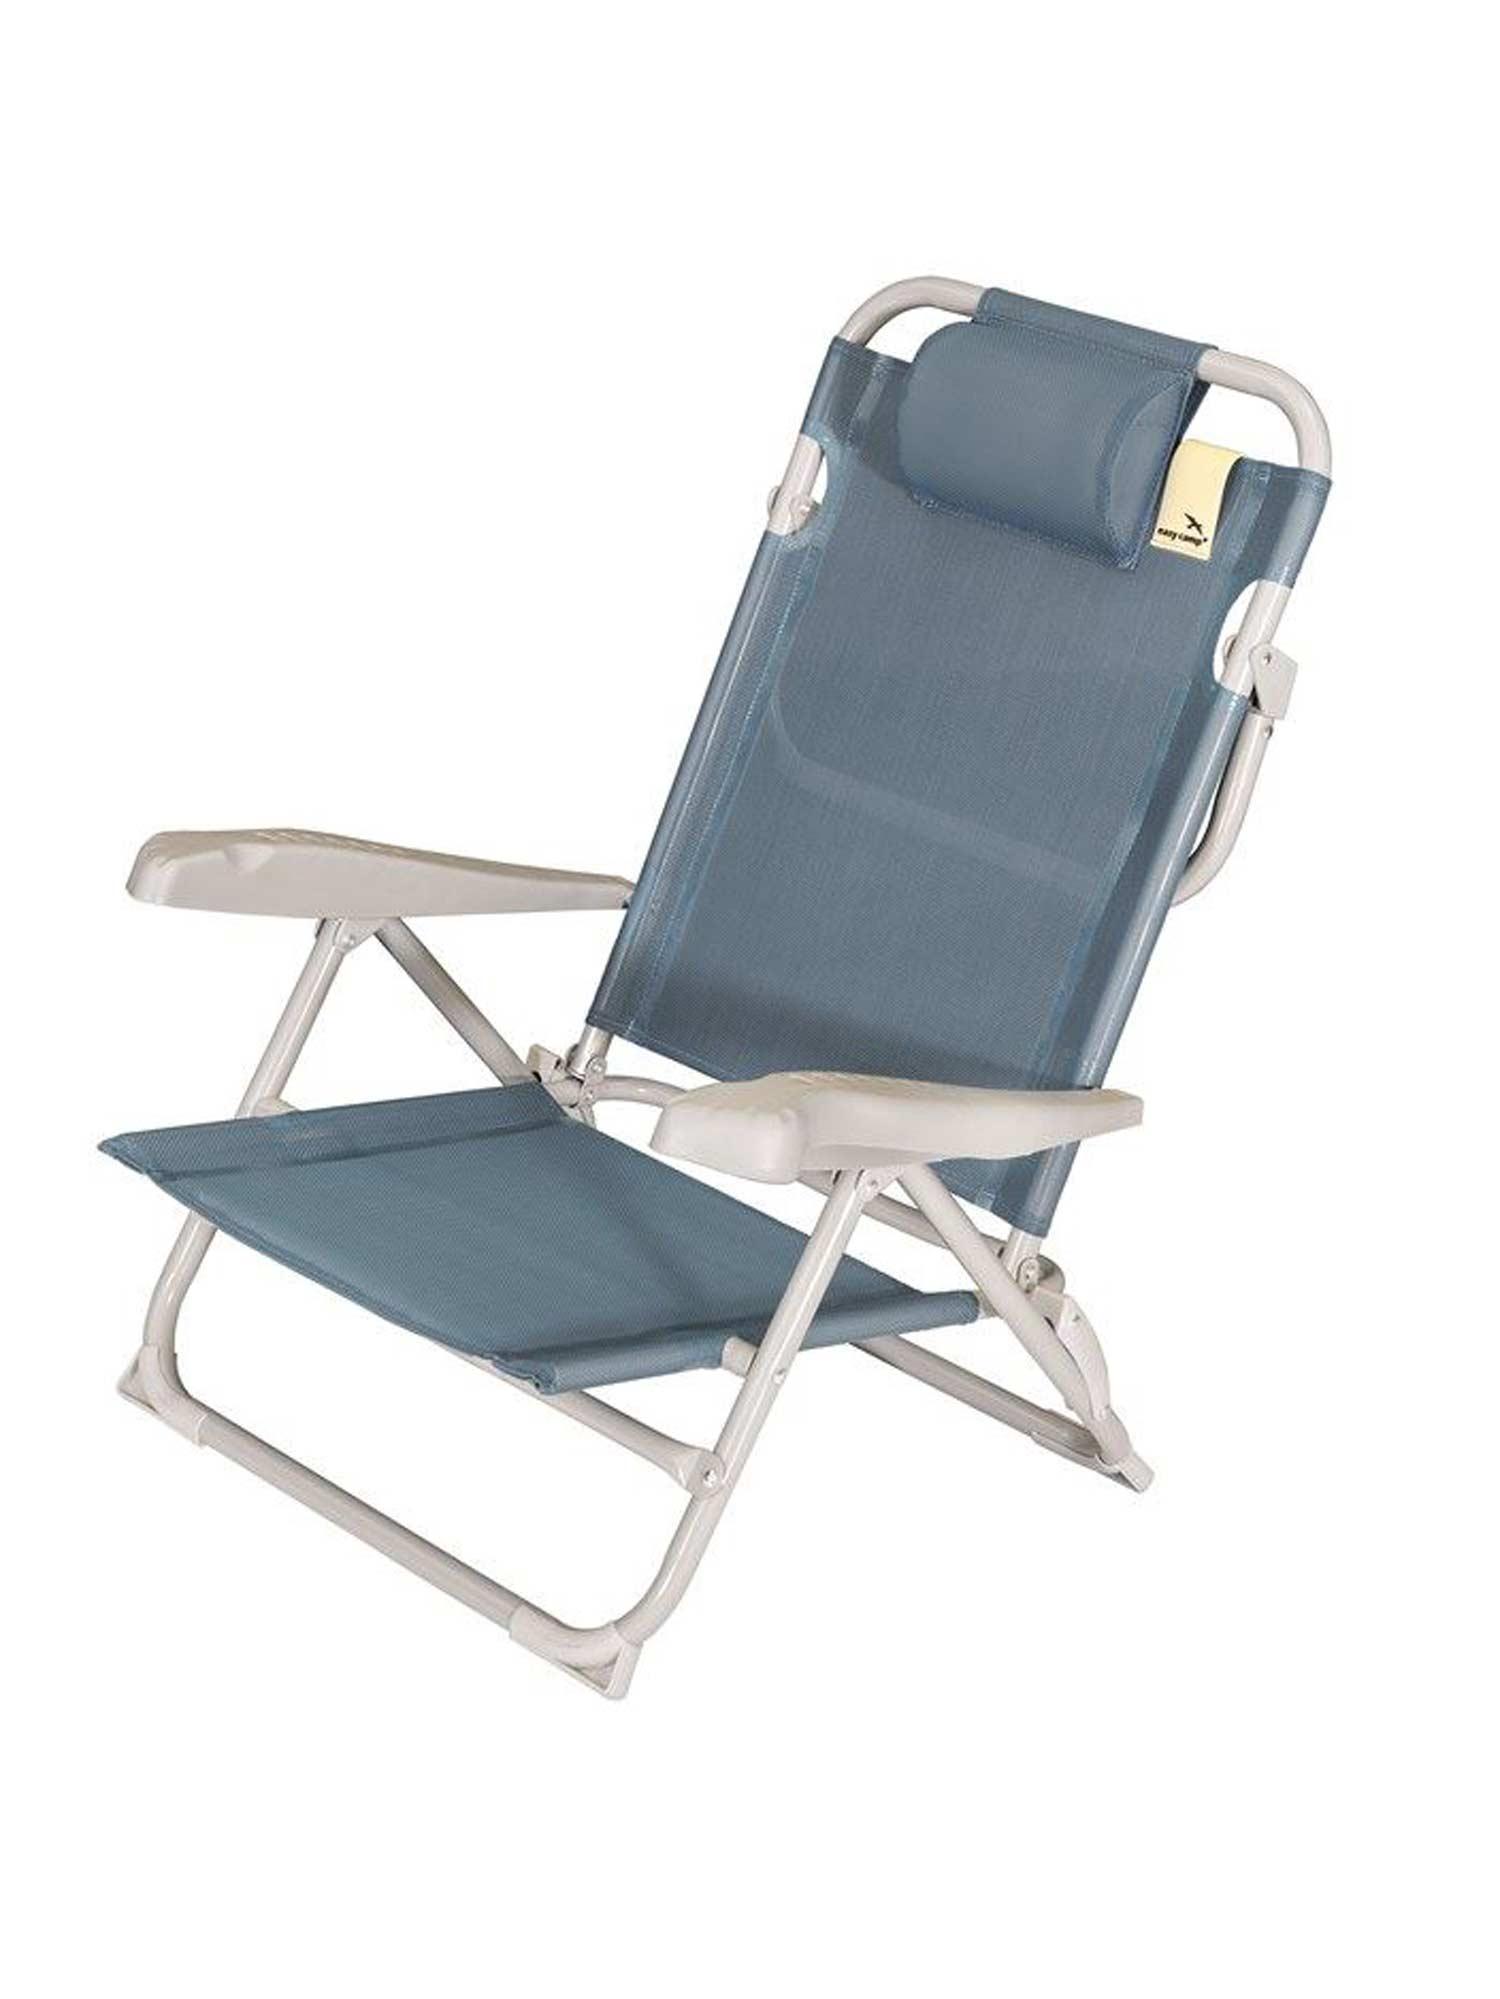 Selected image for EASY CAMP Kamp stolica na sklapanje Breaker plava